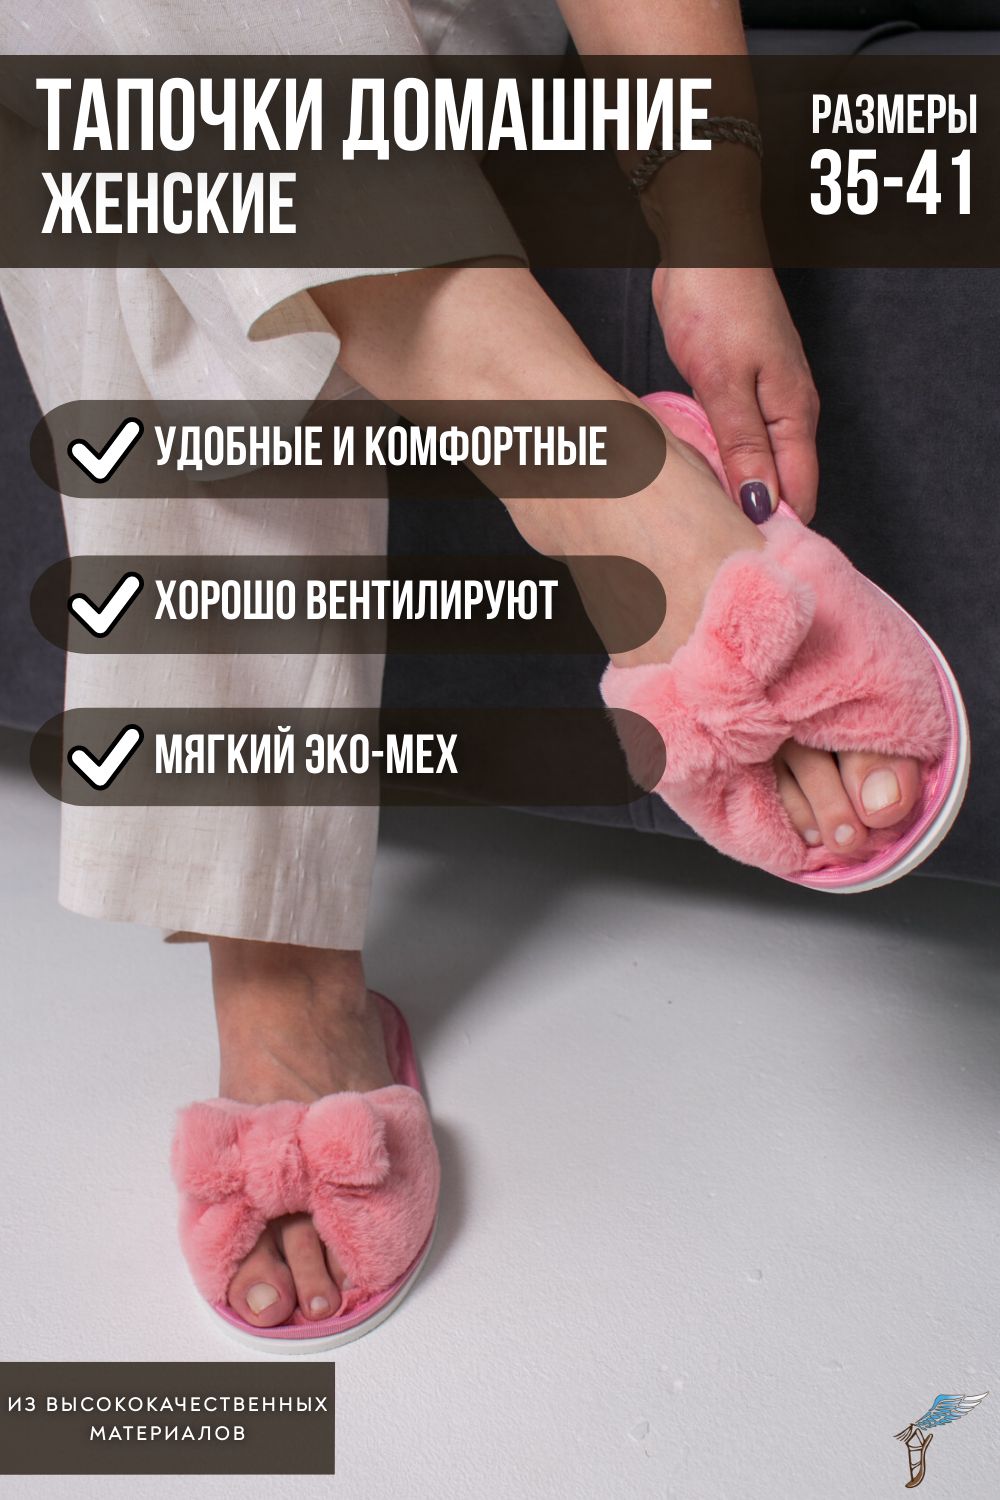 Тапочки домашние женские С-6ЖКБ-МР - пыльно-розовый